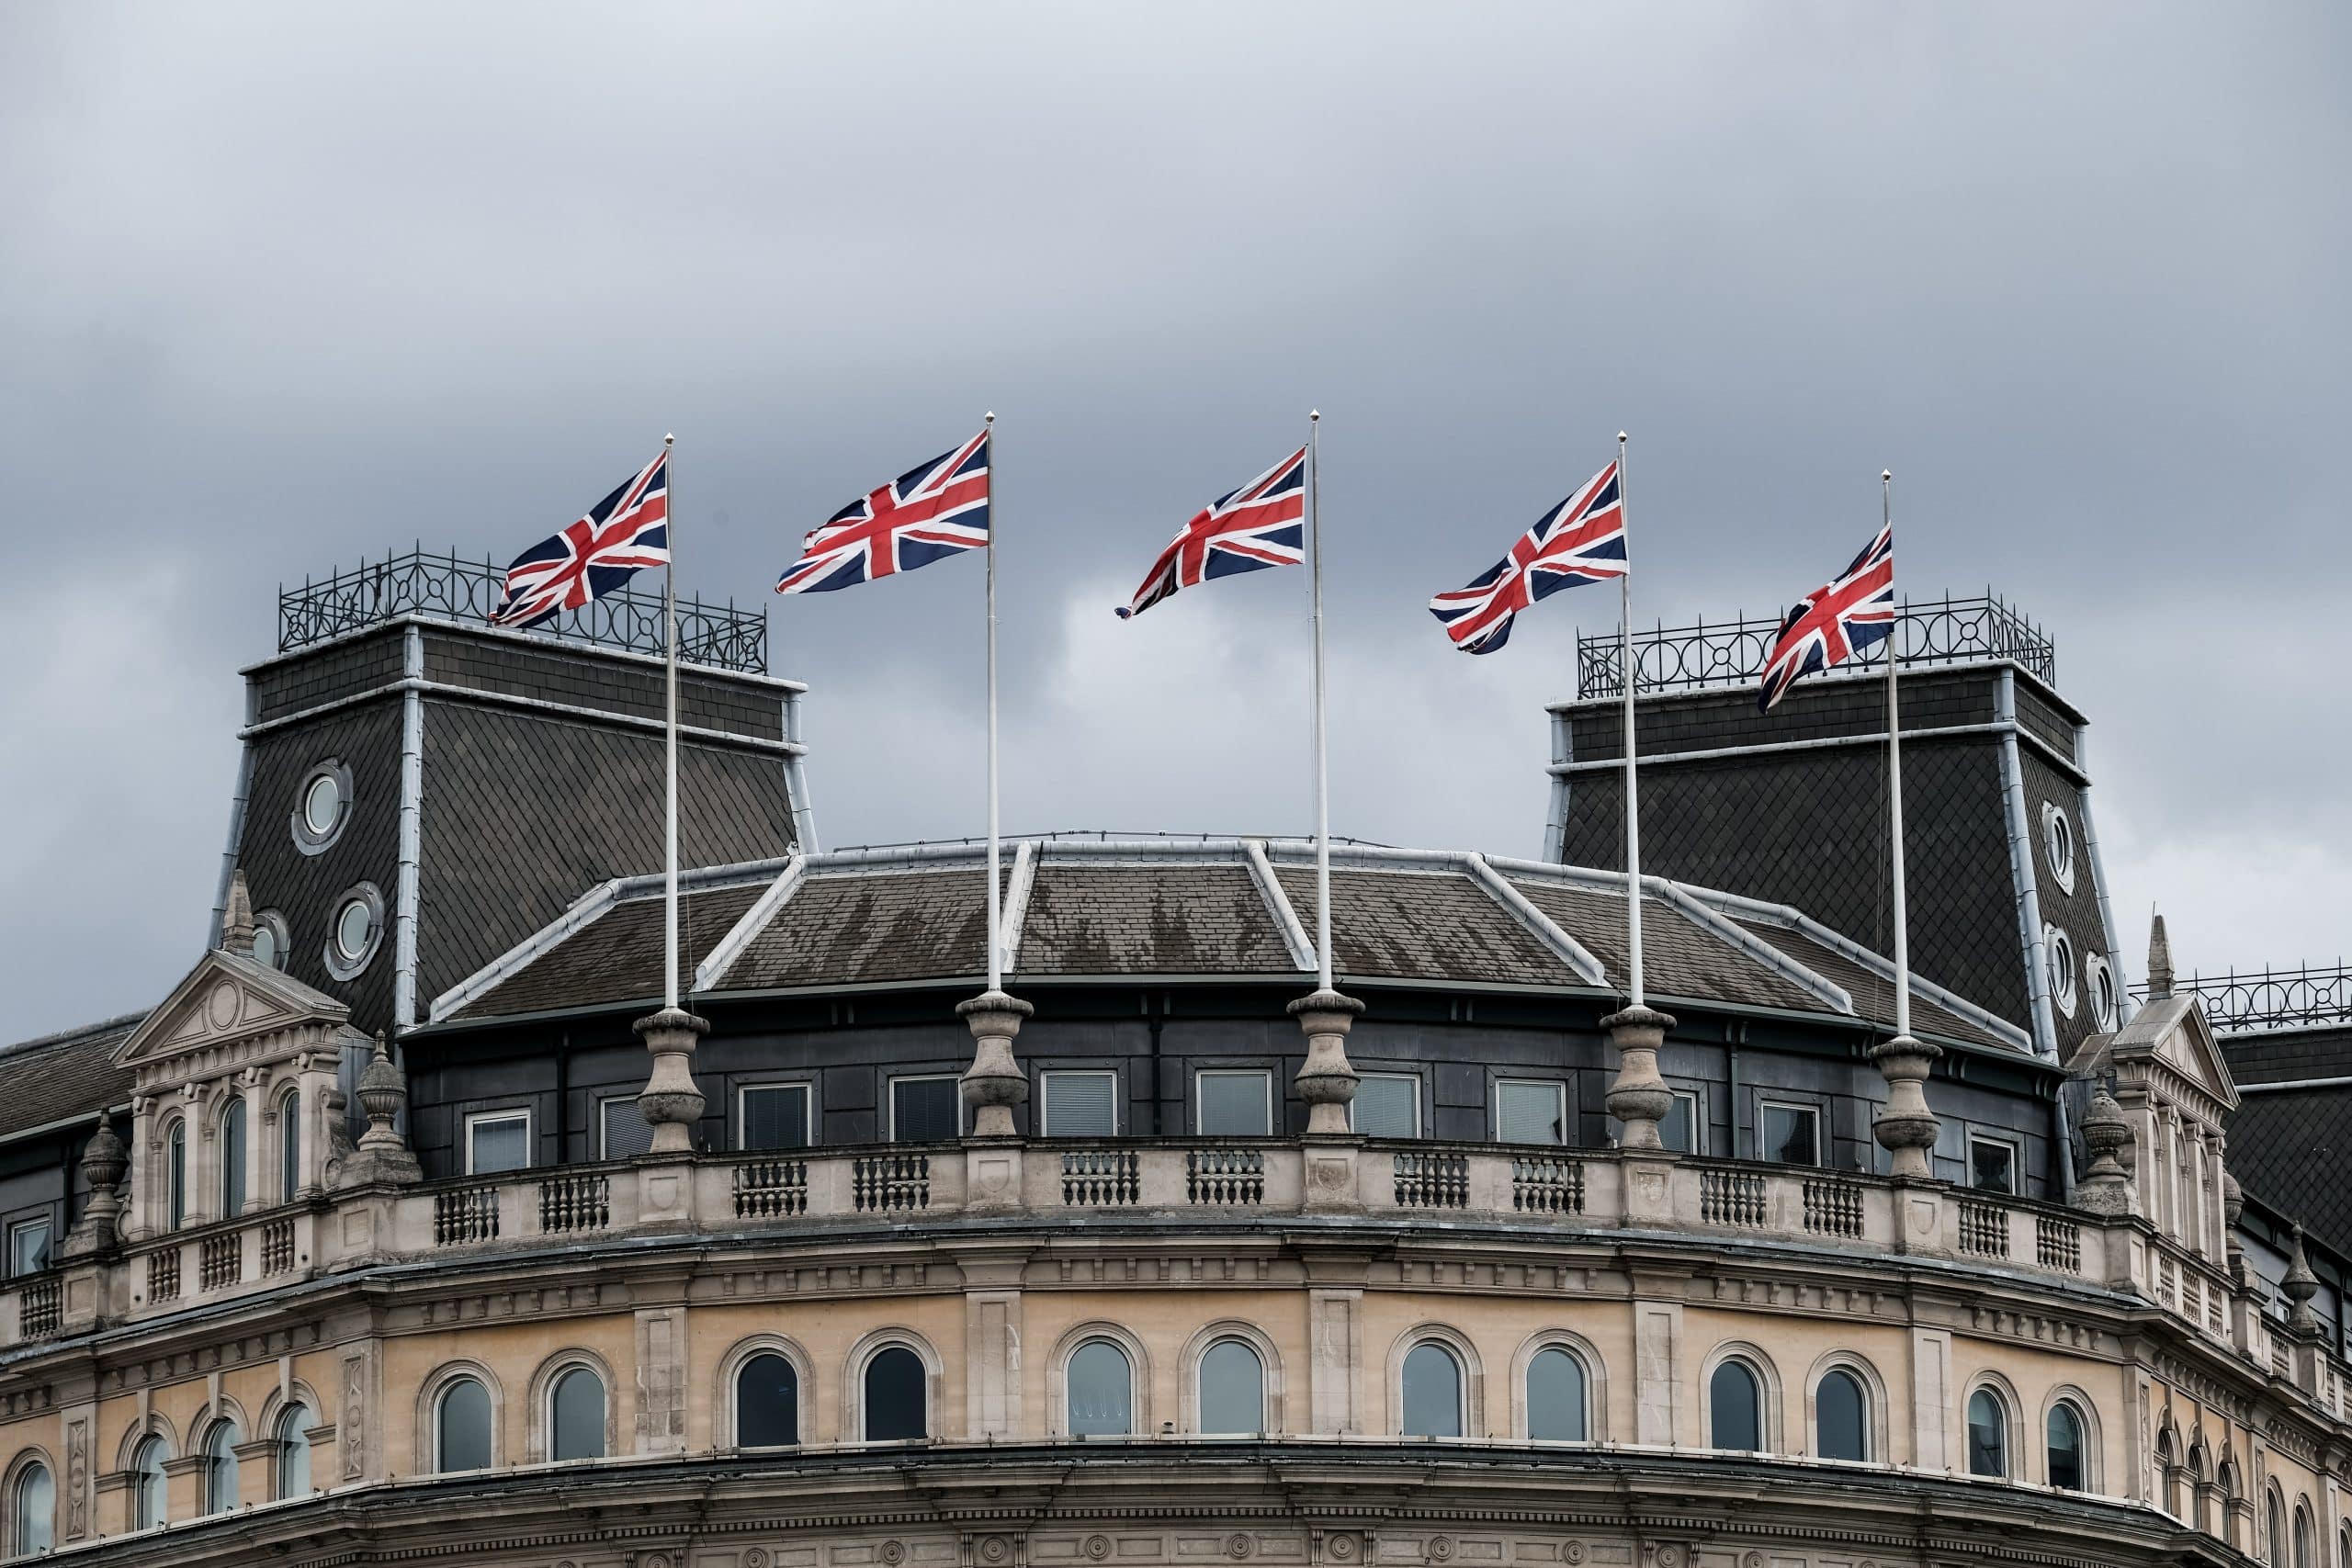 Des drapeaux britanniques flottent devant un monument.